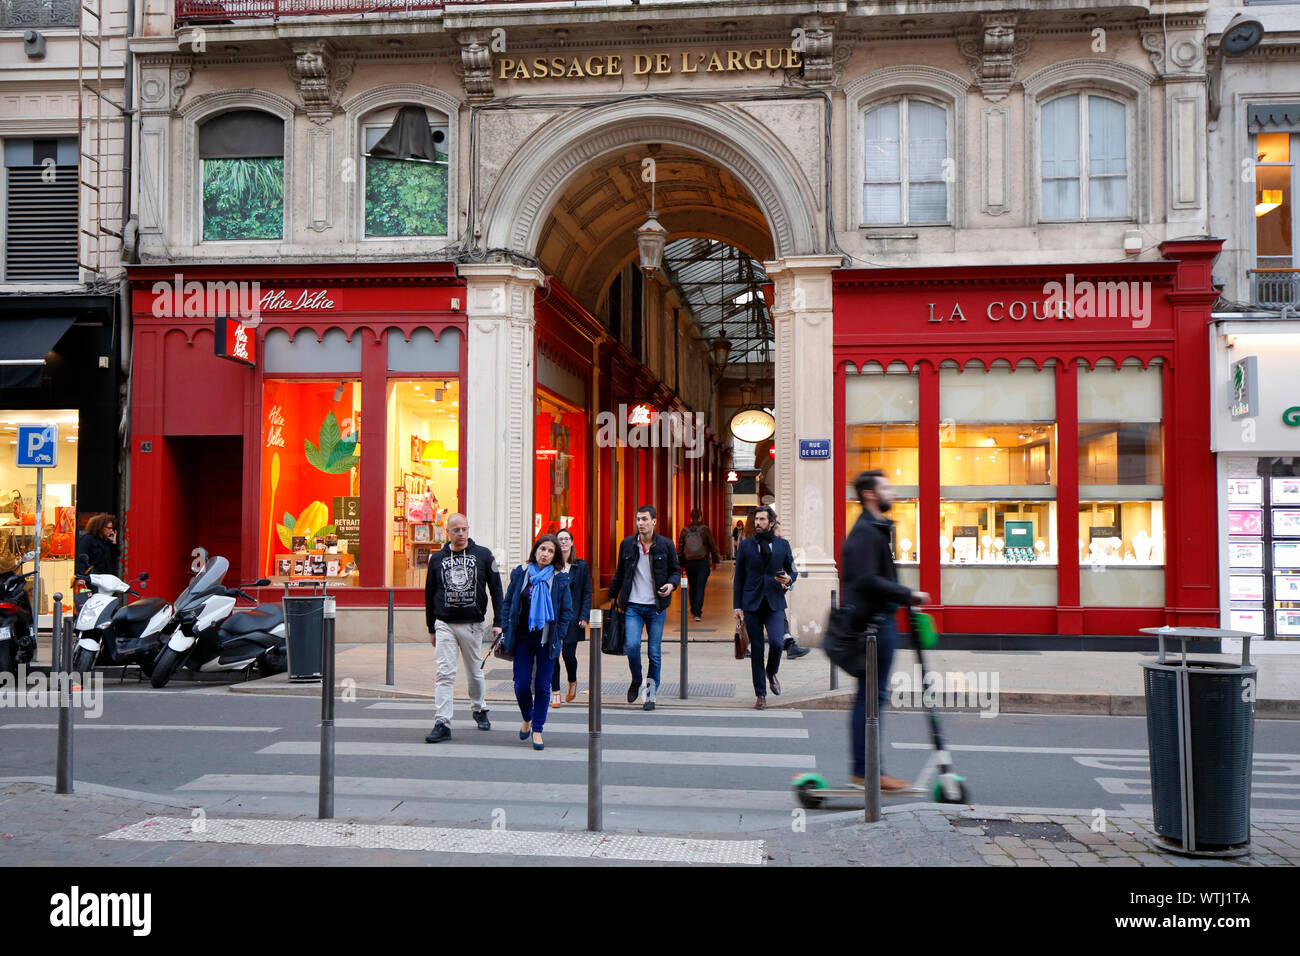 Passage de l'Argue, Rue de Brest entrance, Lyon, France Stock Photo